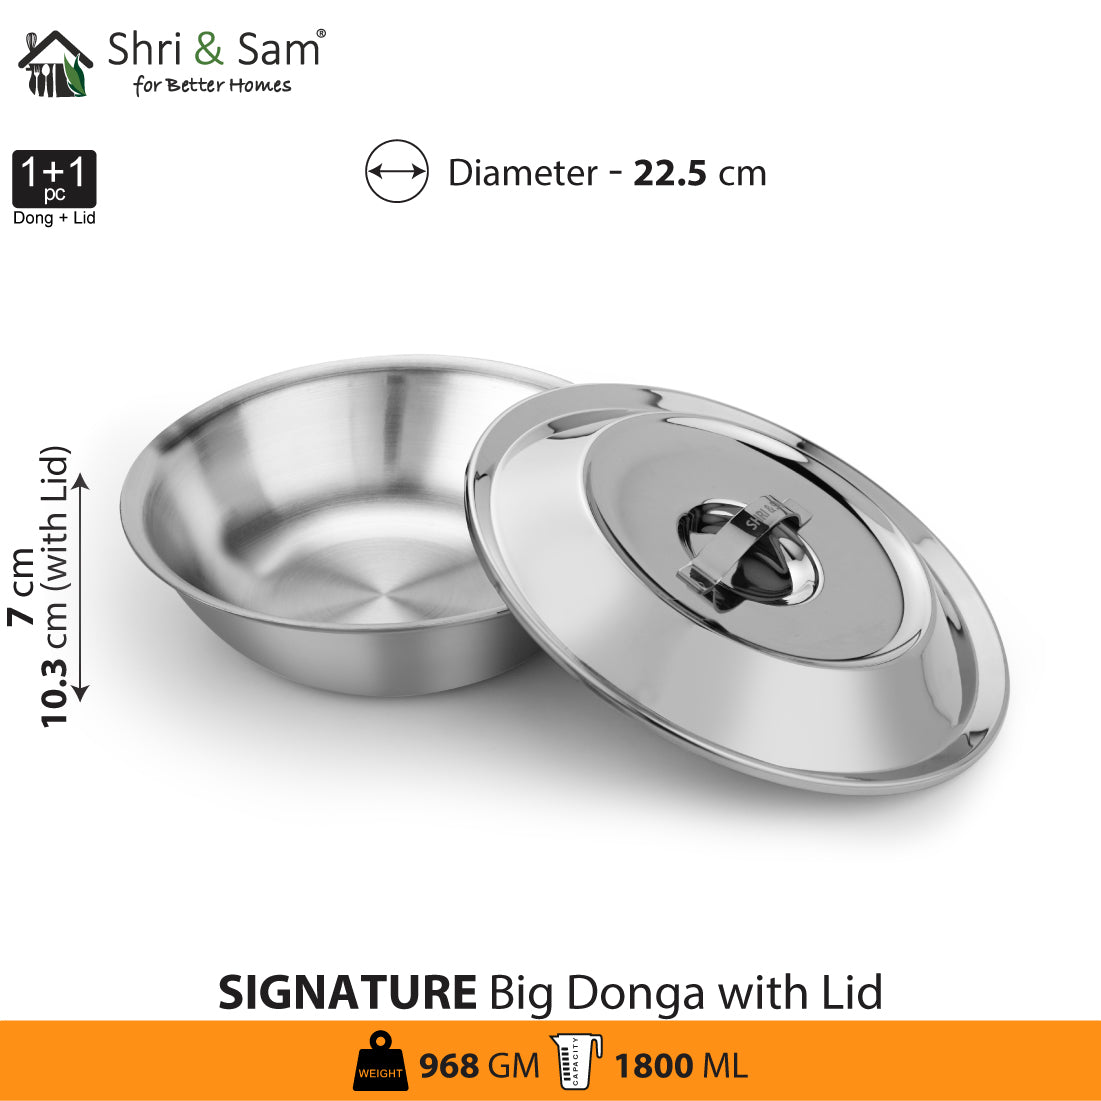 Stainless Steel Big Donga Signature - Matt